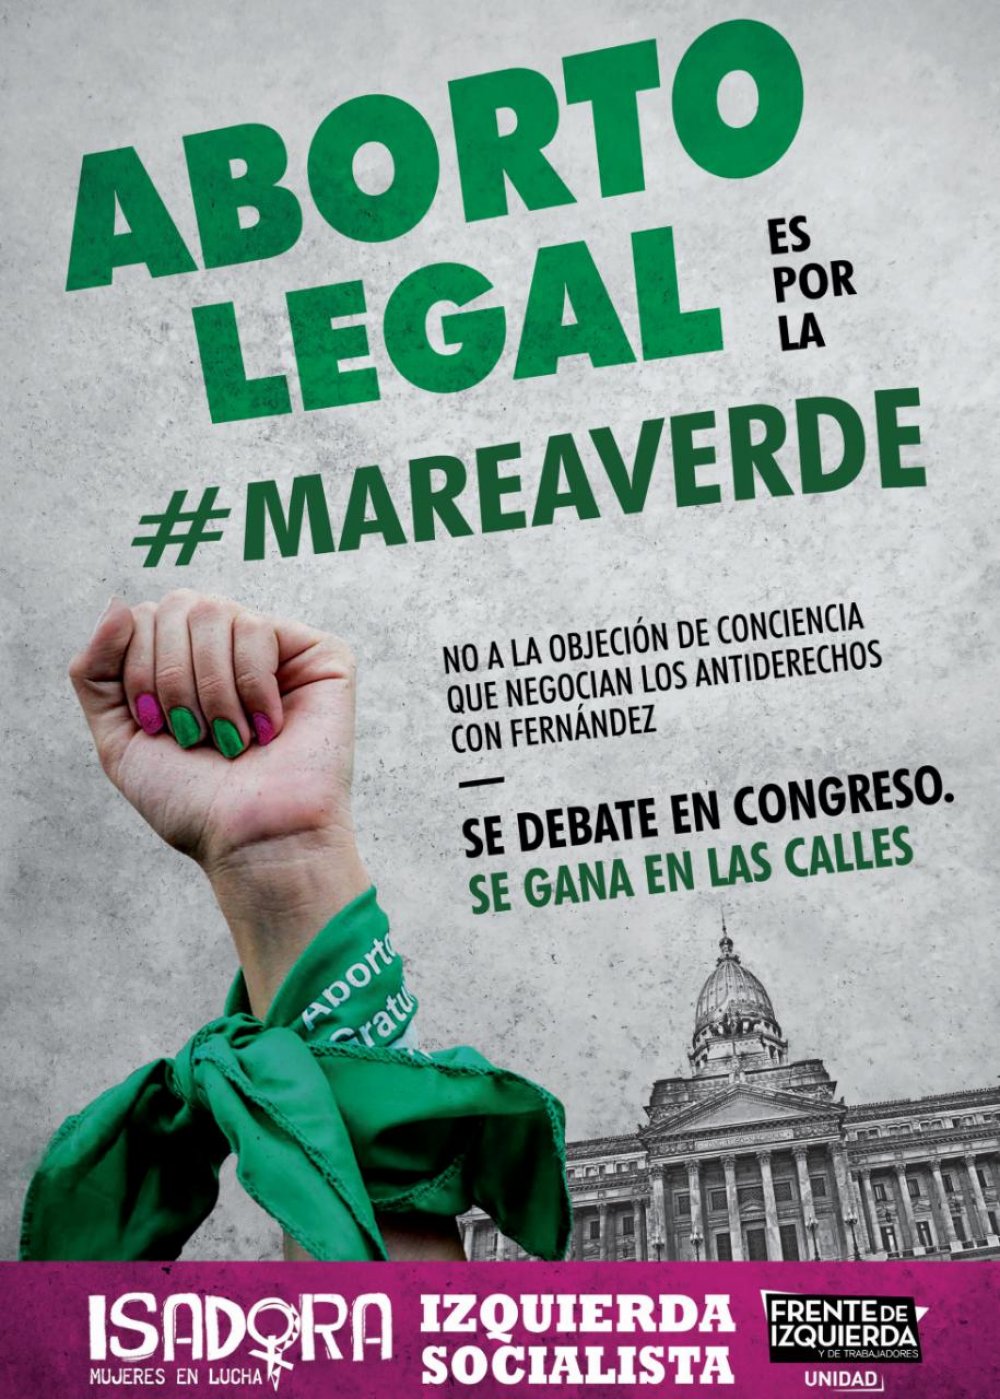 Jornada Federal por el aborto legal, seguro y gratuito: “Se debate en el congreso pero se gana en las calles”